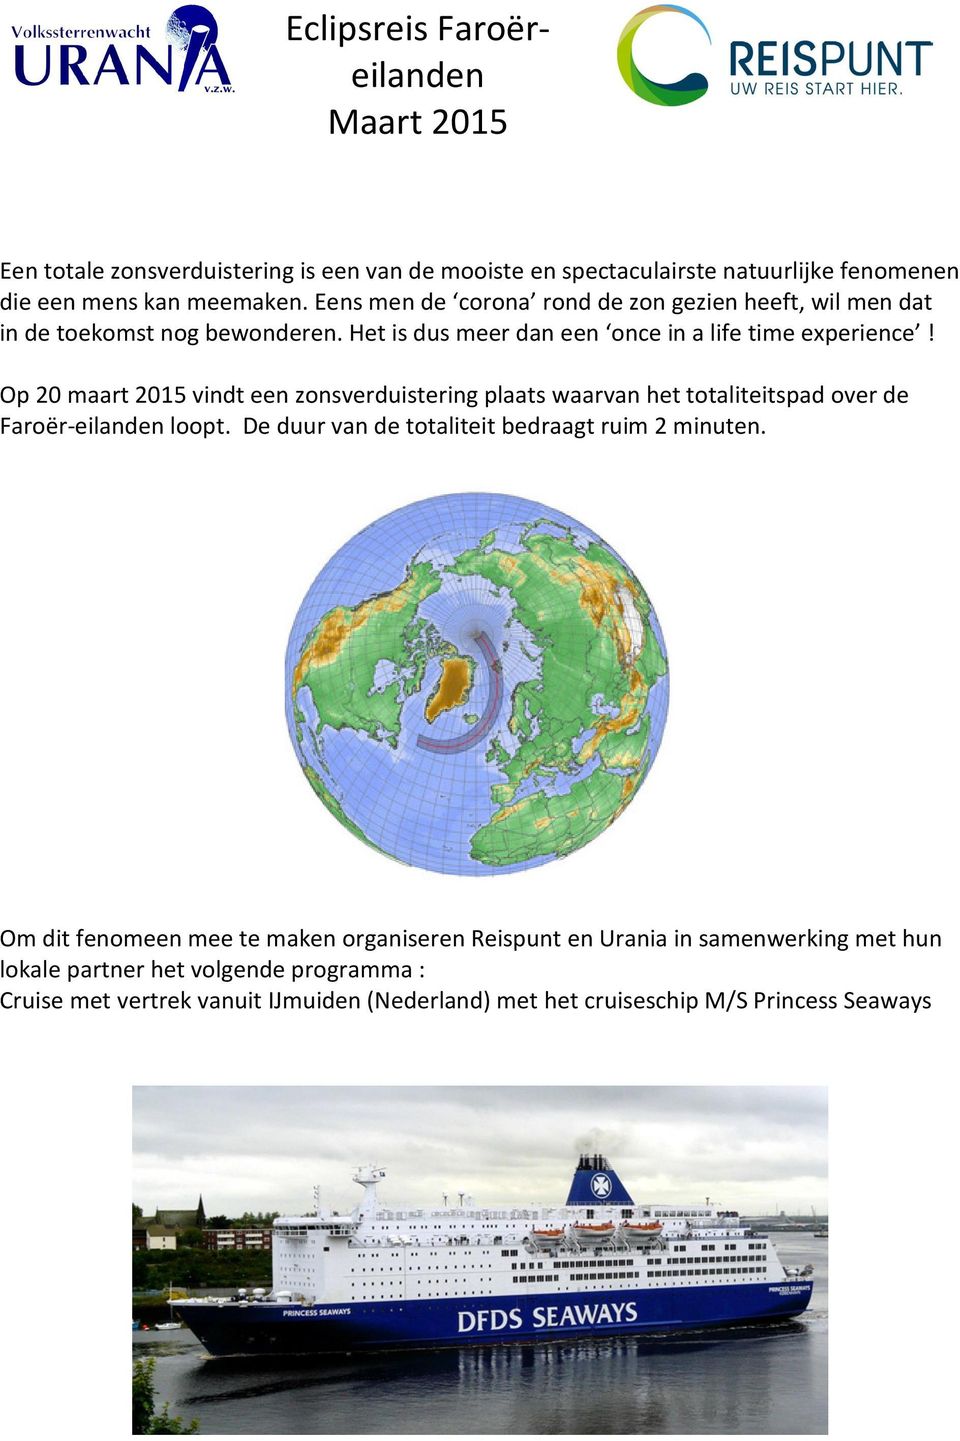 Op 20 maart 2015 vindt een zonsverduistering plaats waarvan het totaliteitspad over de Faroër-eilanden loopt. De duur van de totaliteit bedraagt ruim 2 minuten.